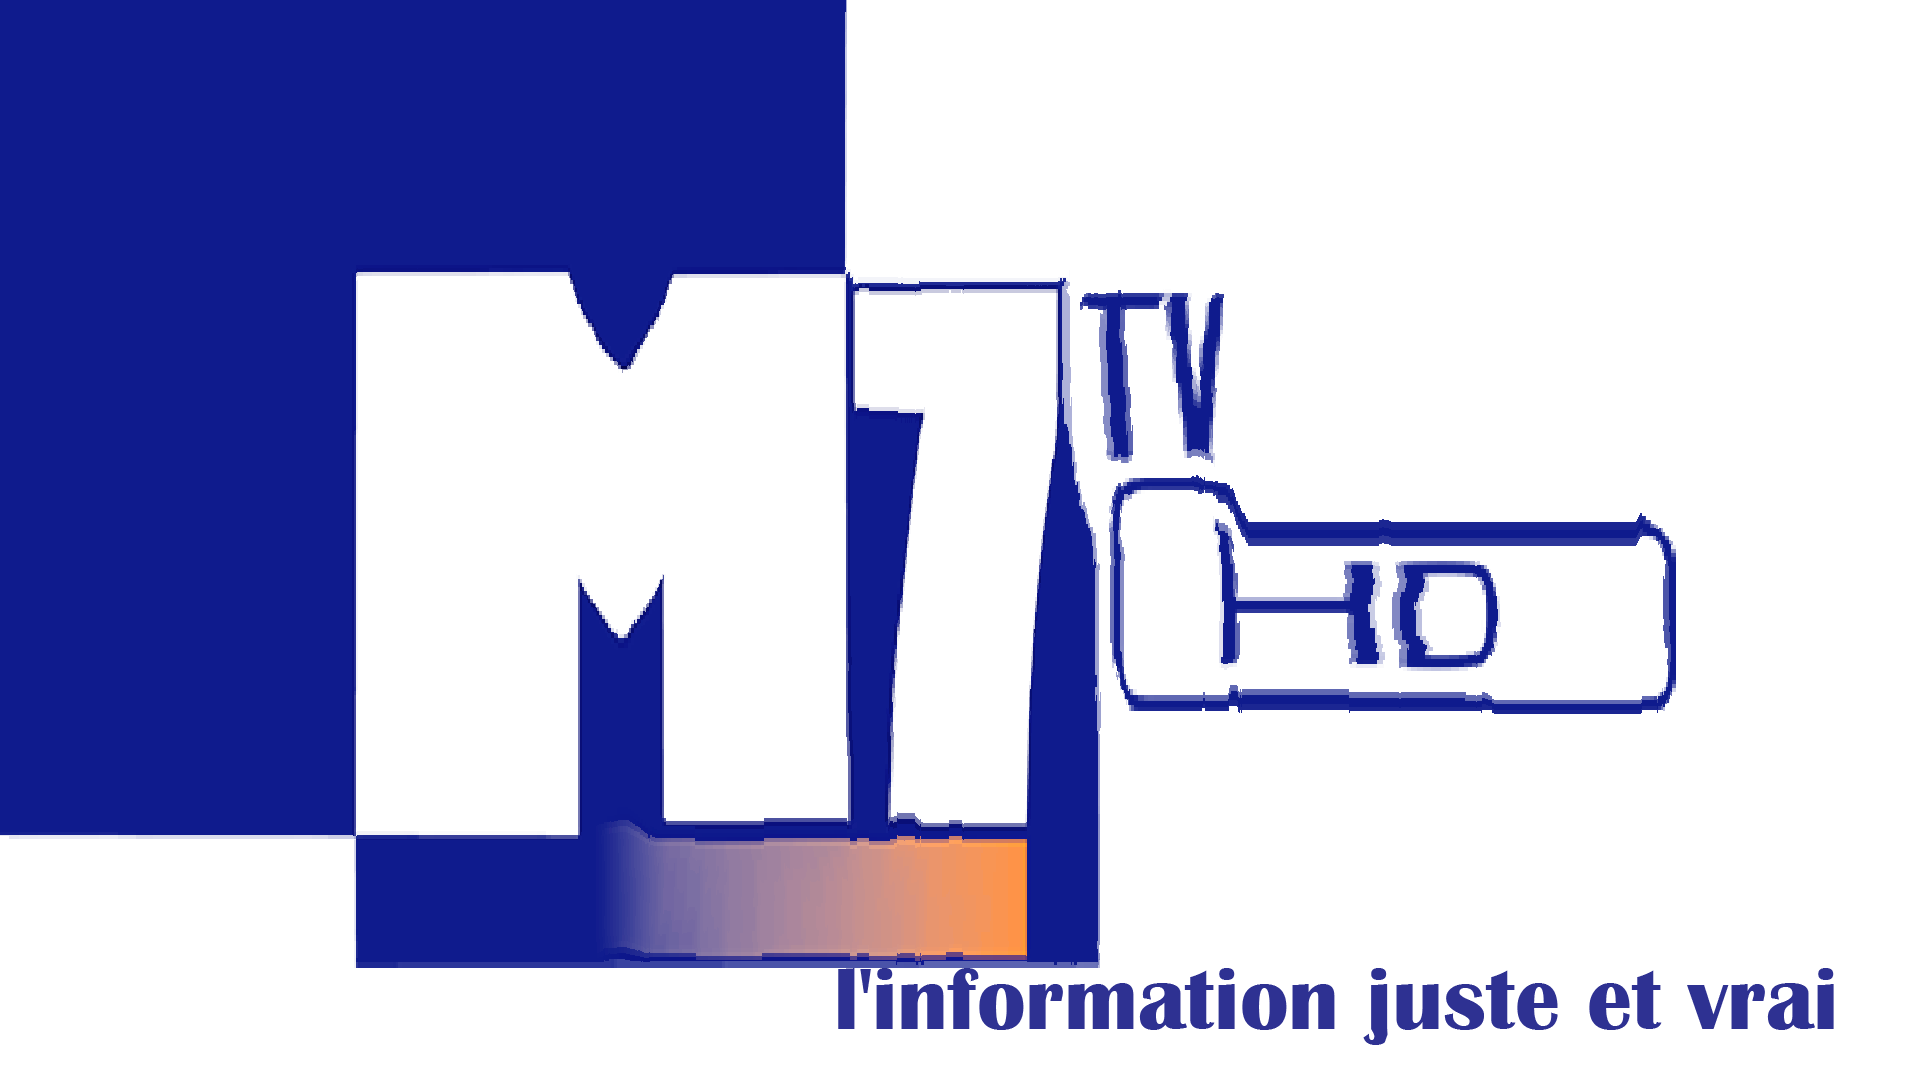 M7TV